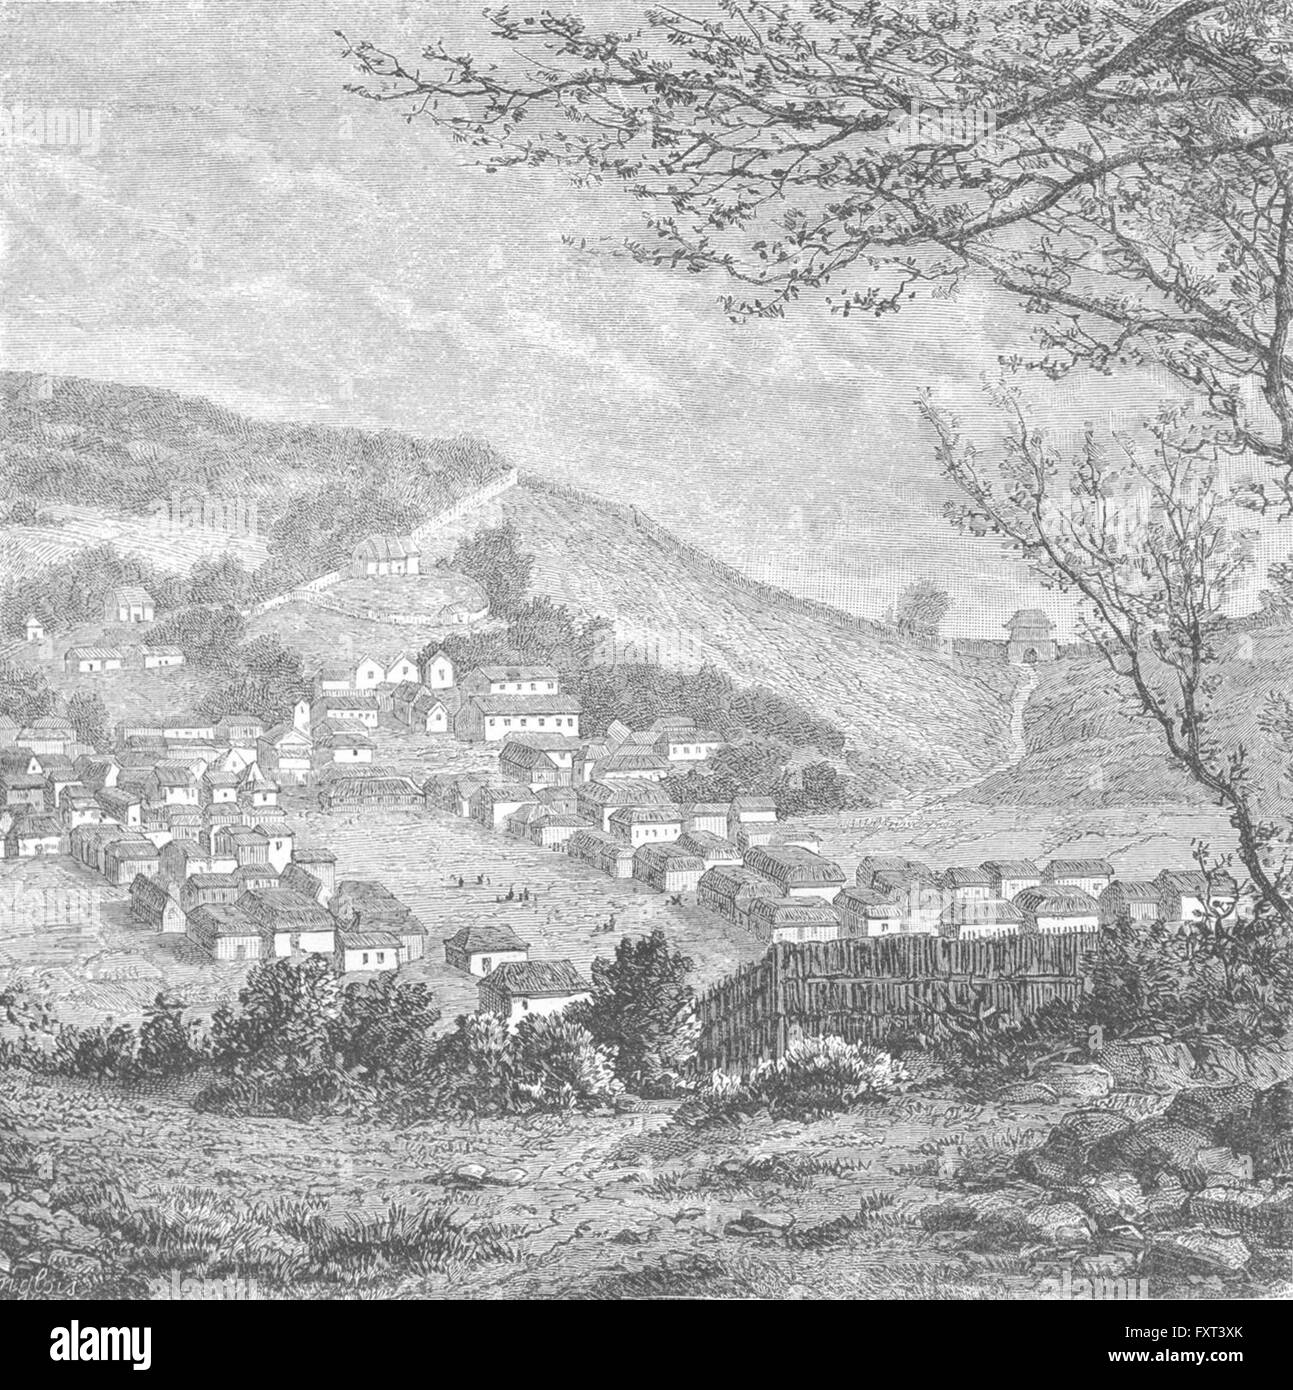 KOREA: Kang-Hoa, Lower Hang-Kiang, antique print c1885 Stock Photo